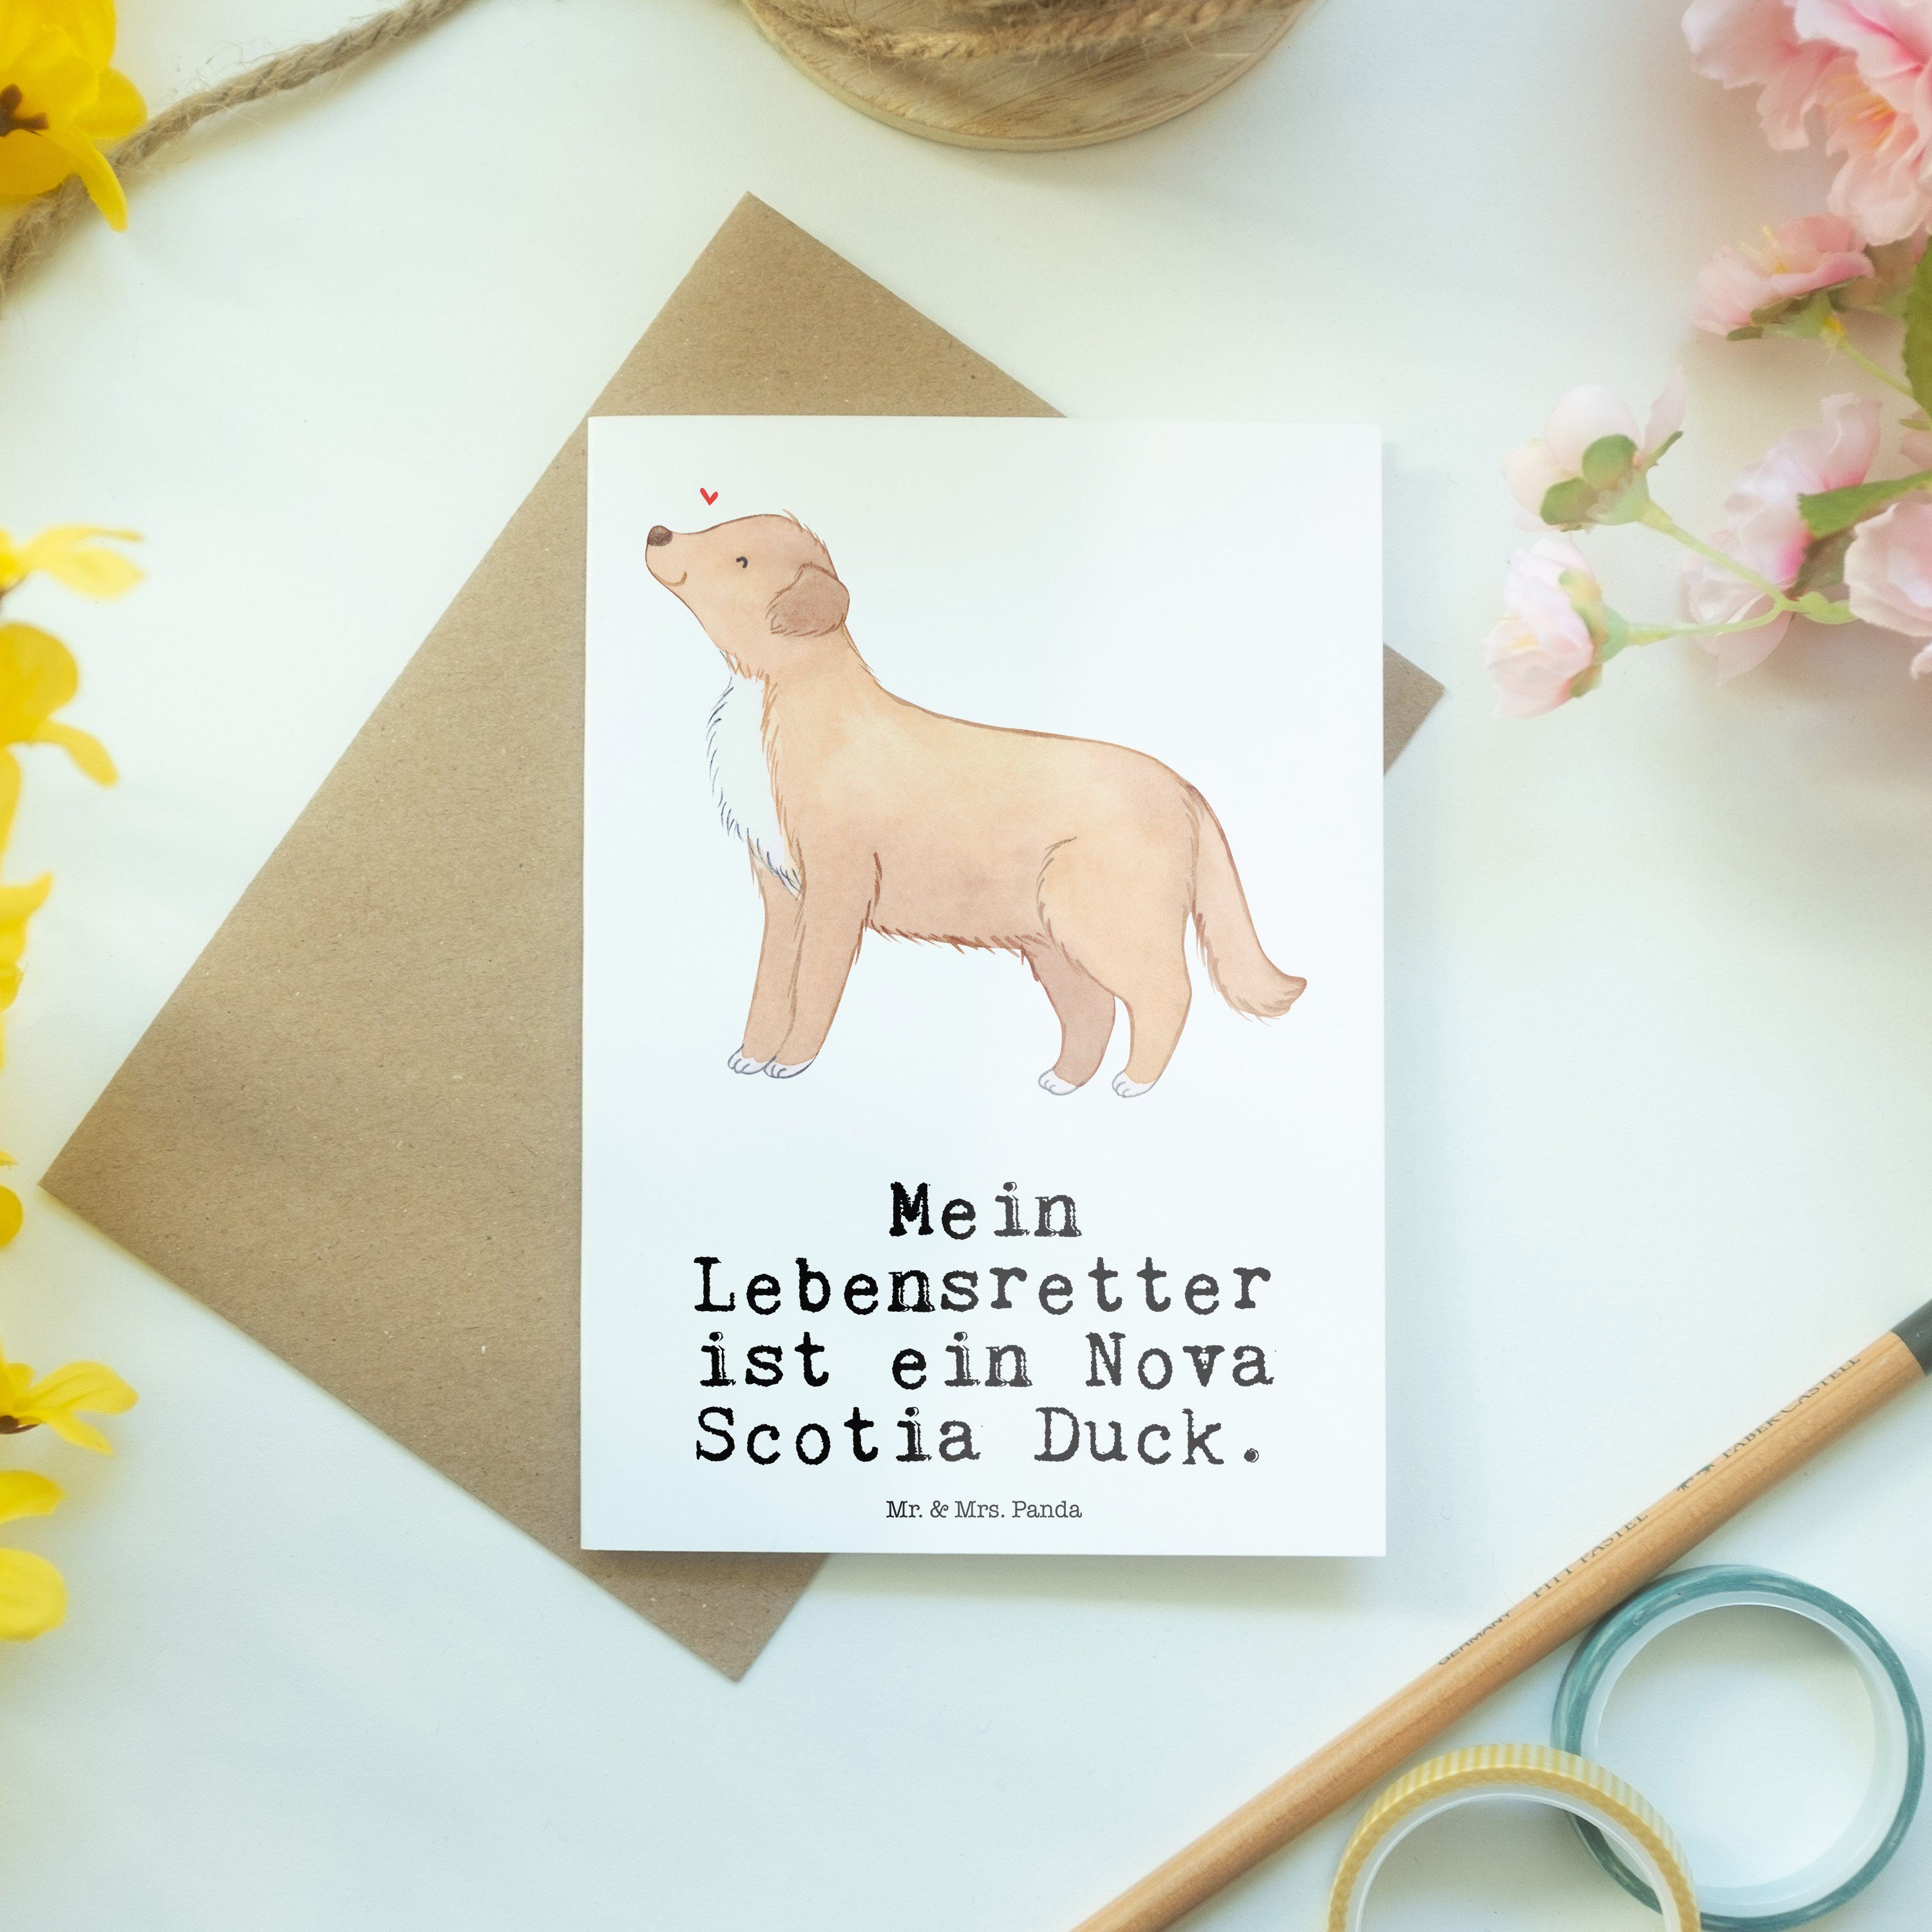 Mr. & Mrs. Panda Lebensretter Hoc Weiß - Geschenk, - Grußkarte Duck Einladungskarte, Scotia Nova